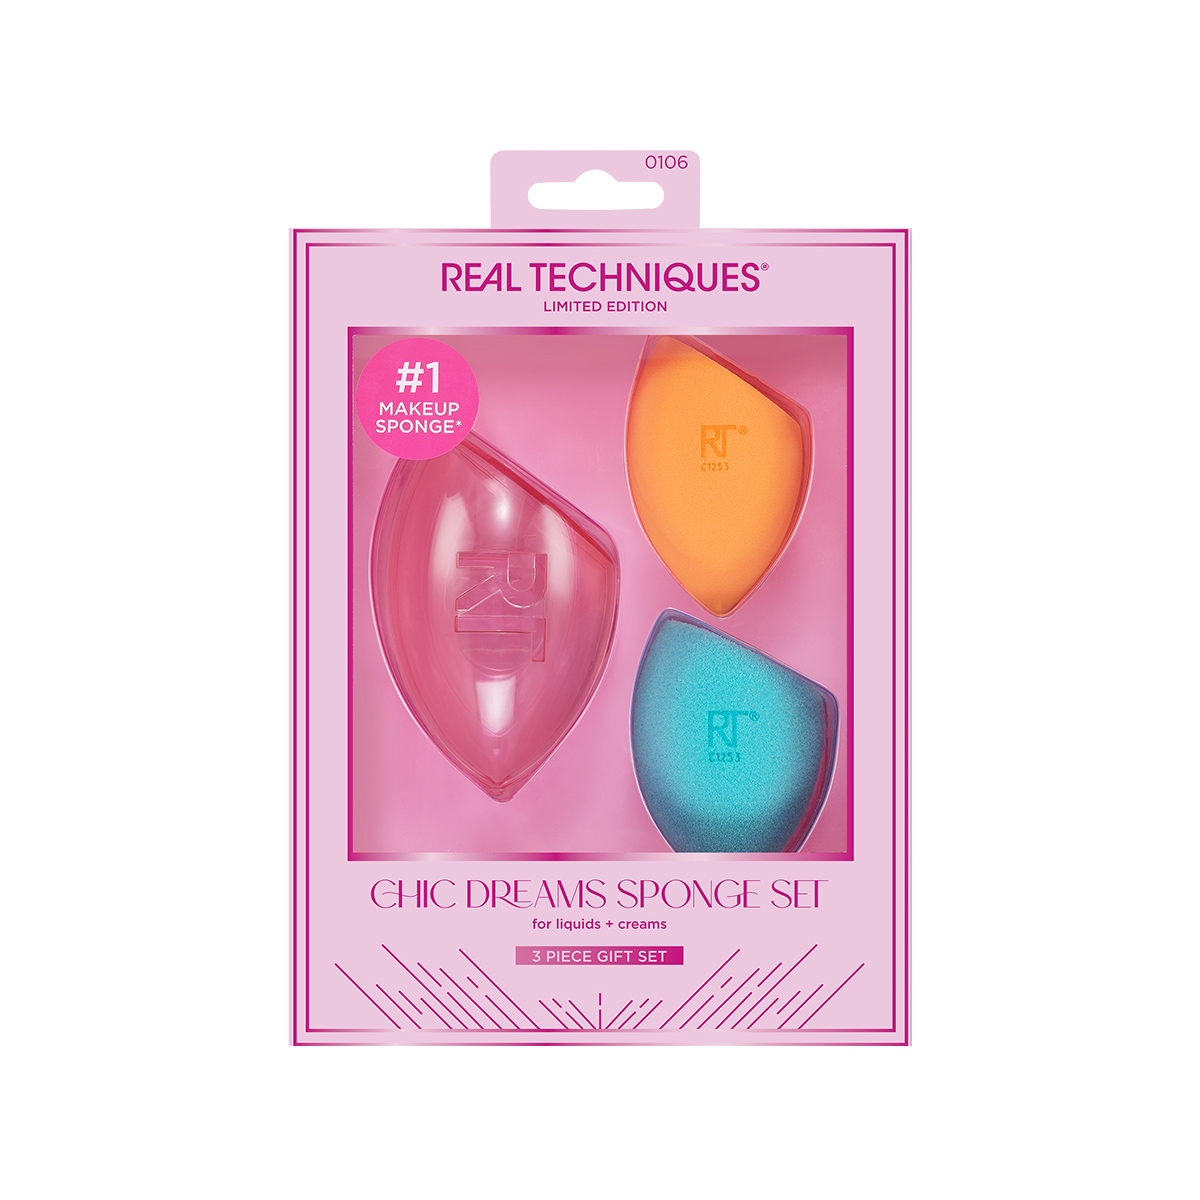 Real Techniques Chic Dreams Sponge Set - интернет-магазин профессиональной косметики Spadream, изображение 52931